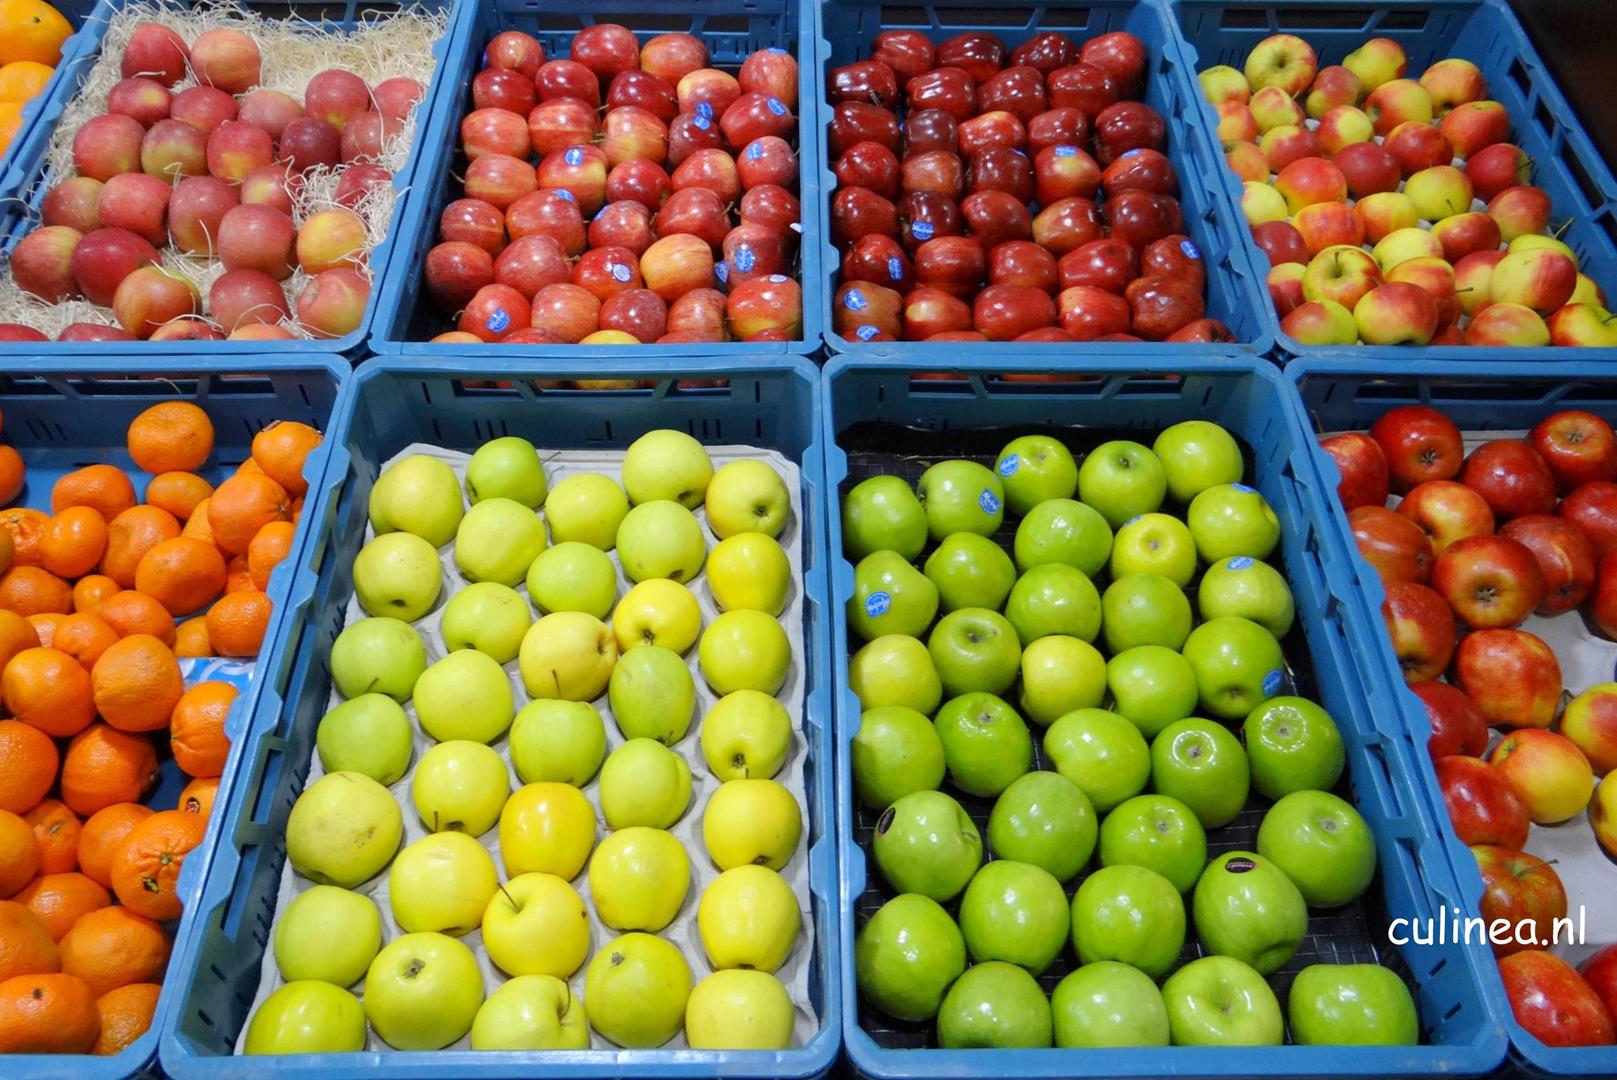 Uitstroom alledaags Kom langs om het te weten Markt of supermarkt: Waar is fruit goedkoper? - Culinea.nl;